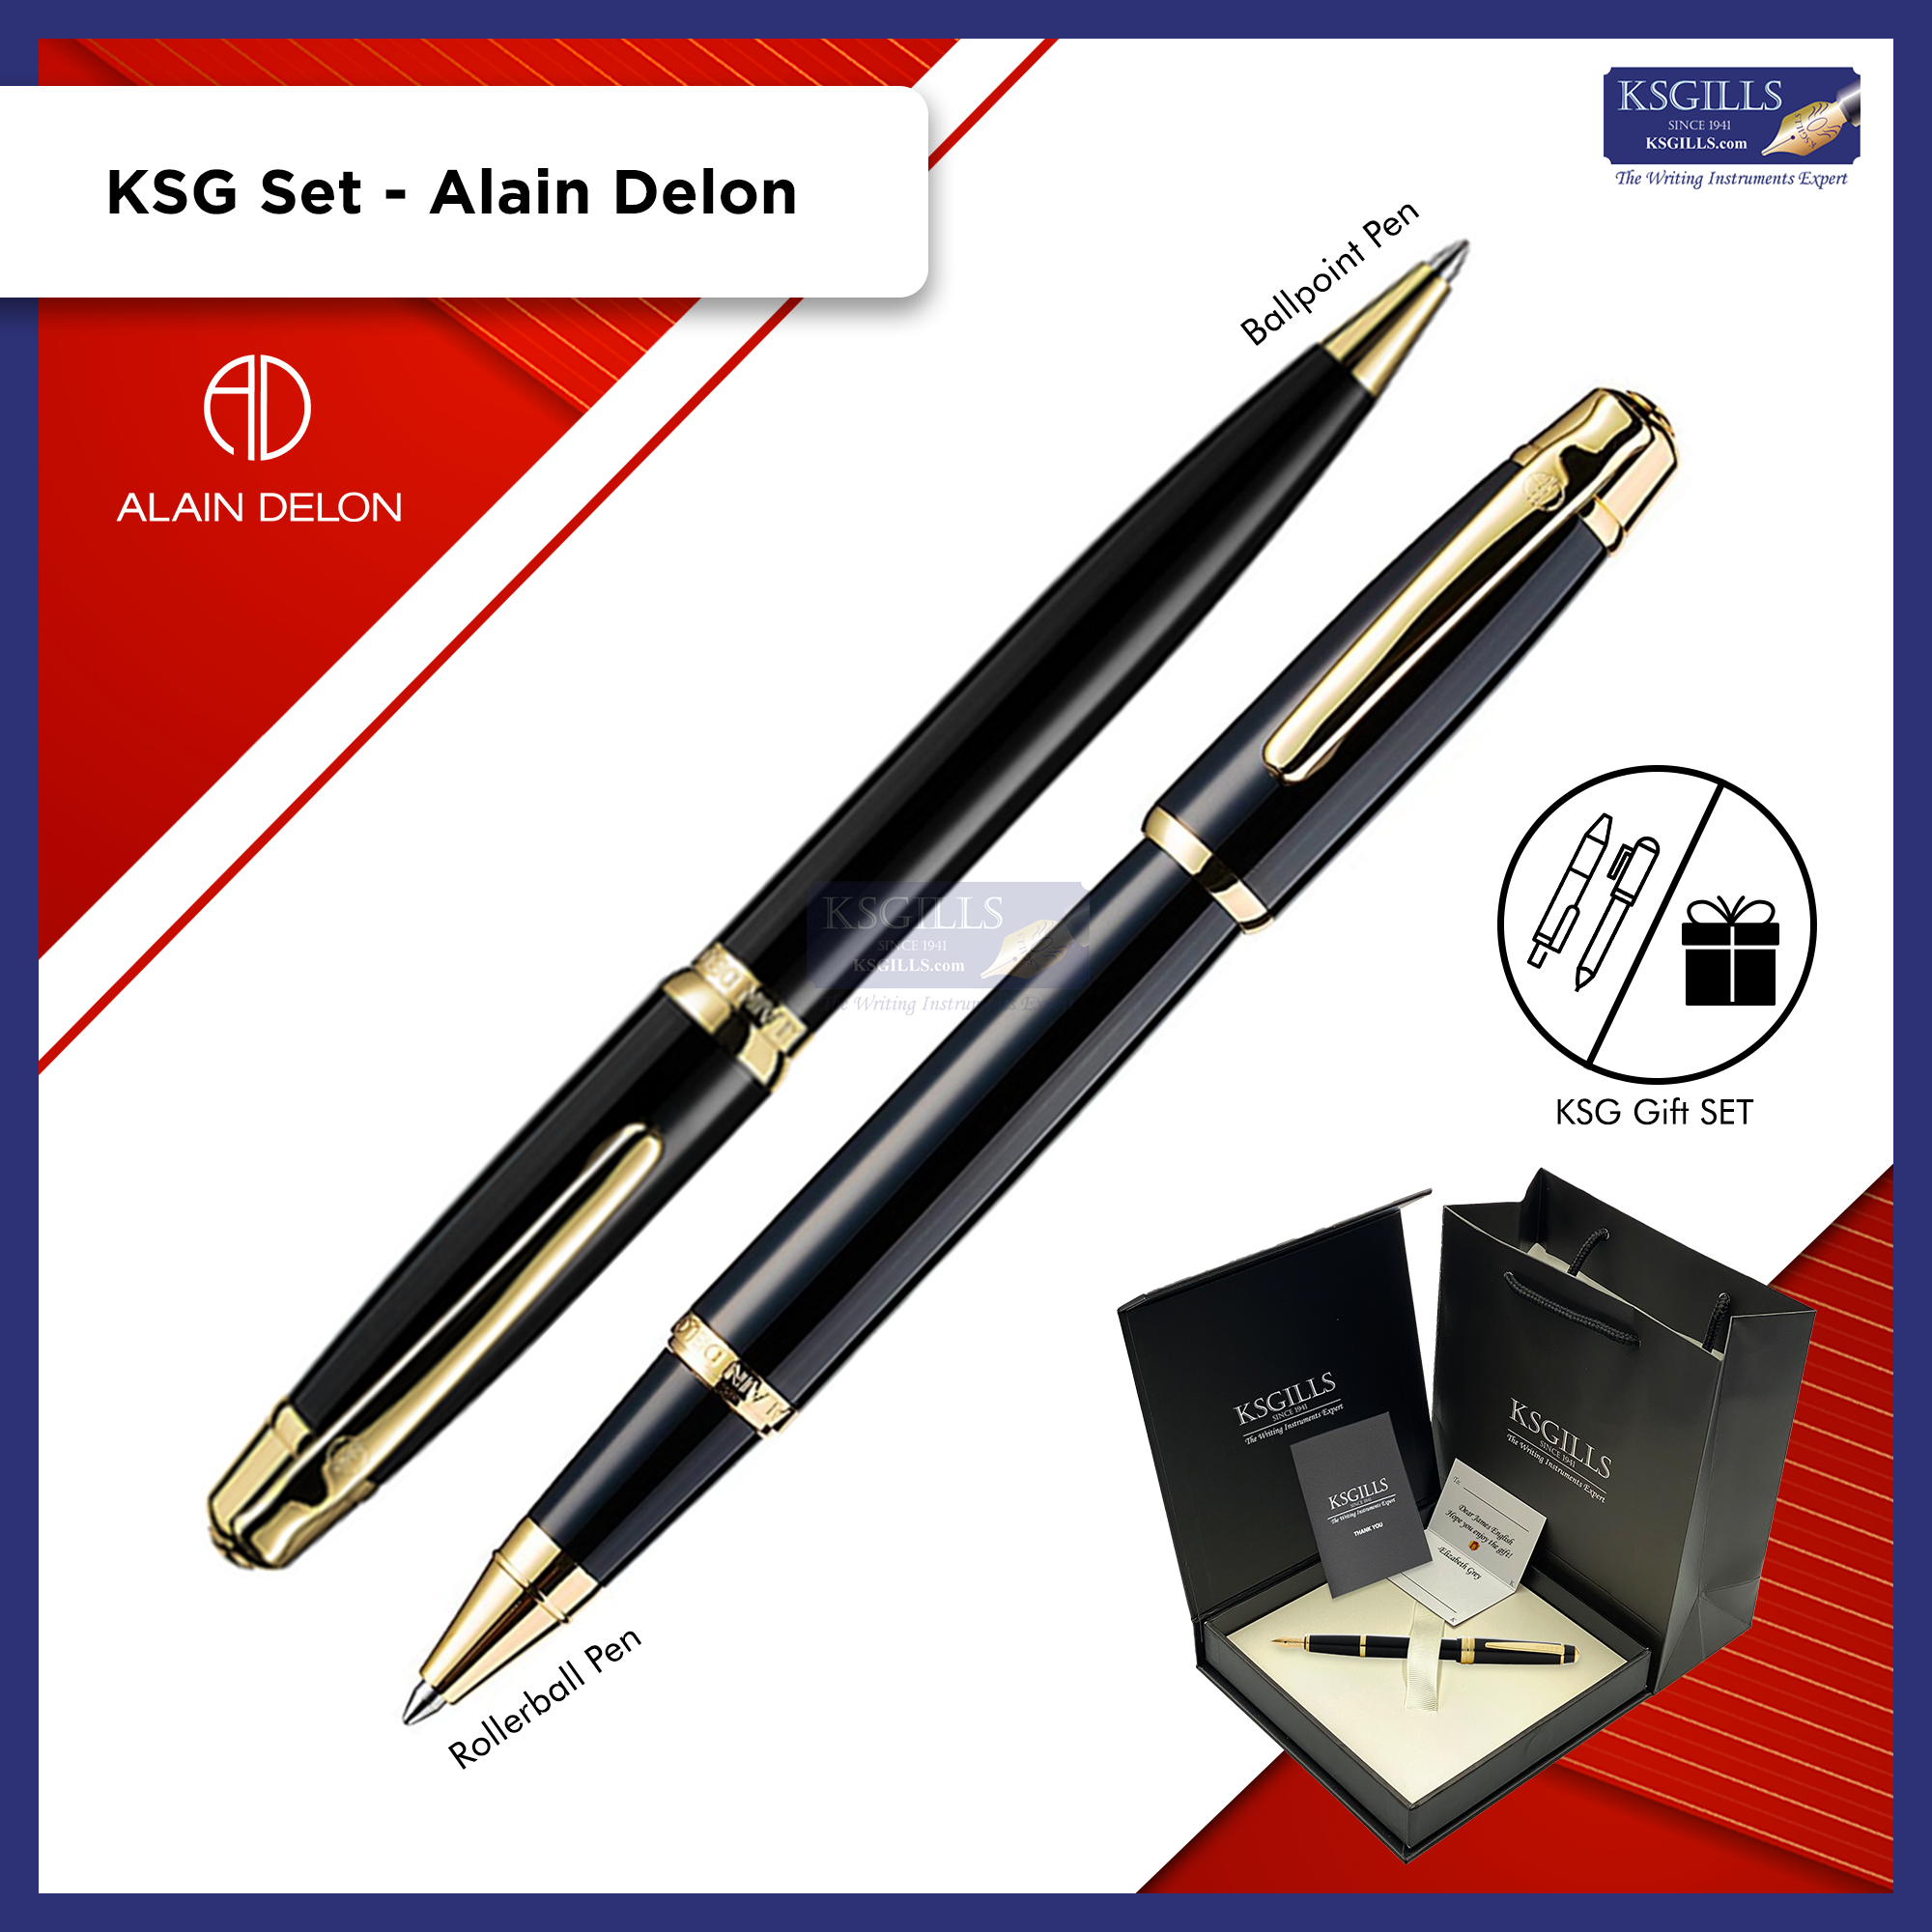 KSG sets (Pen SETs, Gift SETs, Notebook SETs)